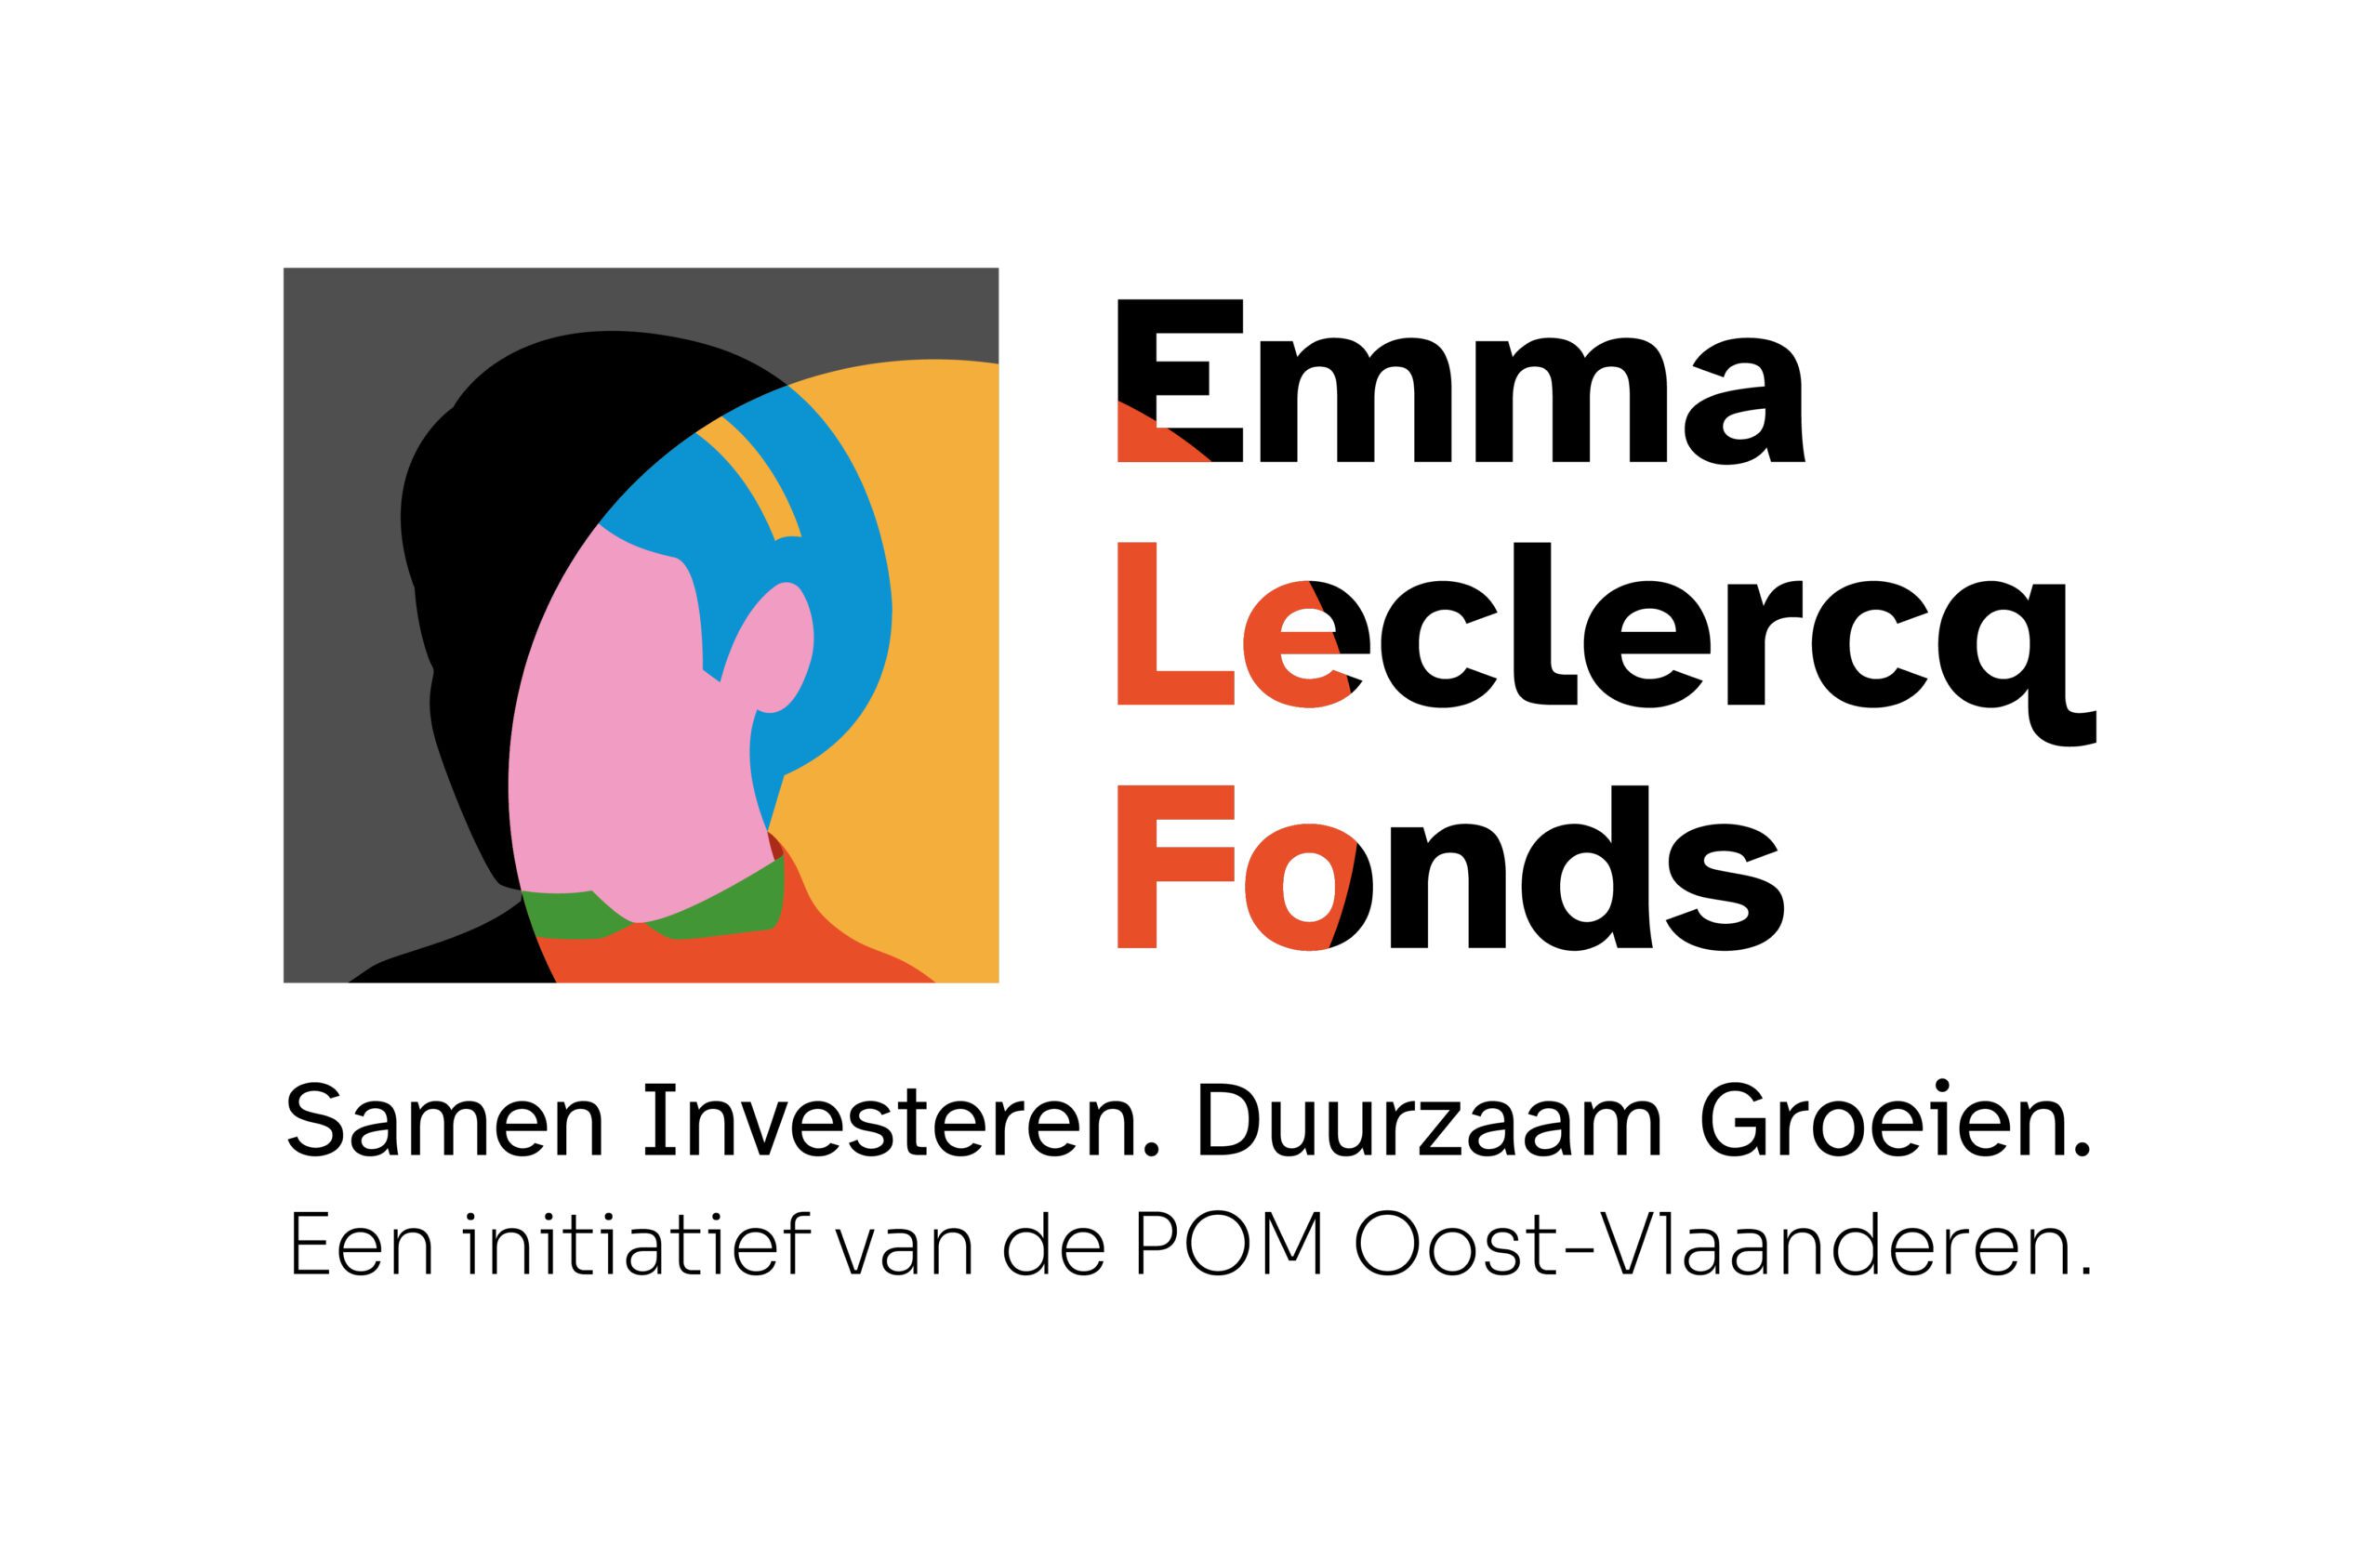 Nood aan financiering? Maak kennis met het Emma Leclercq Fonds!